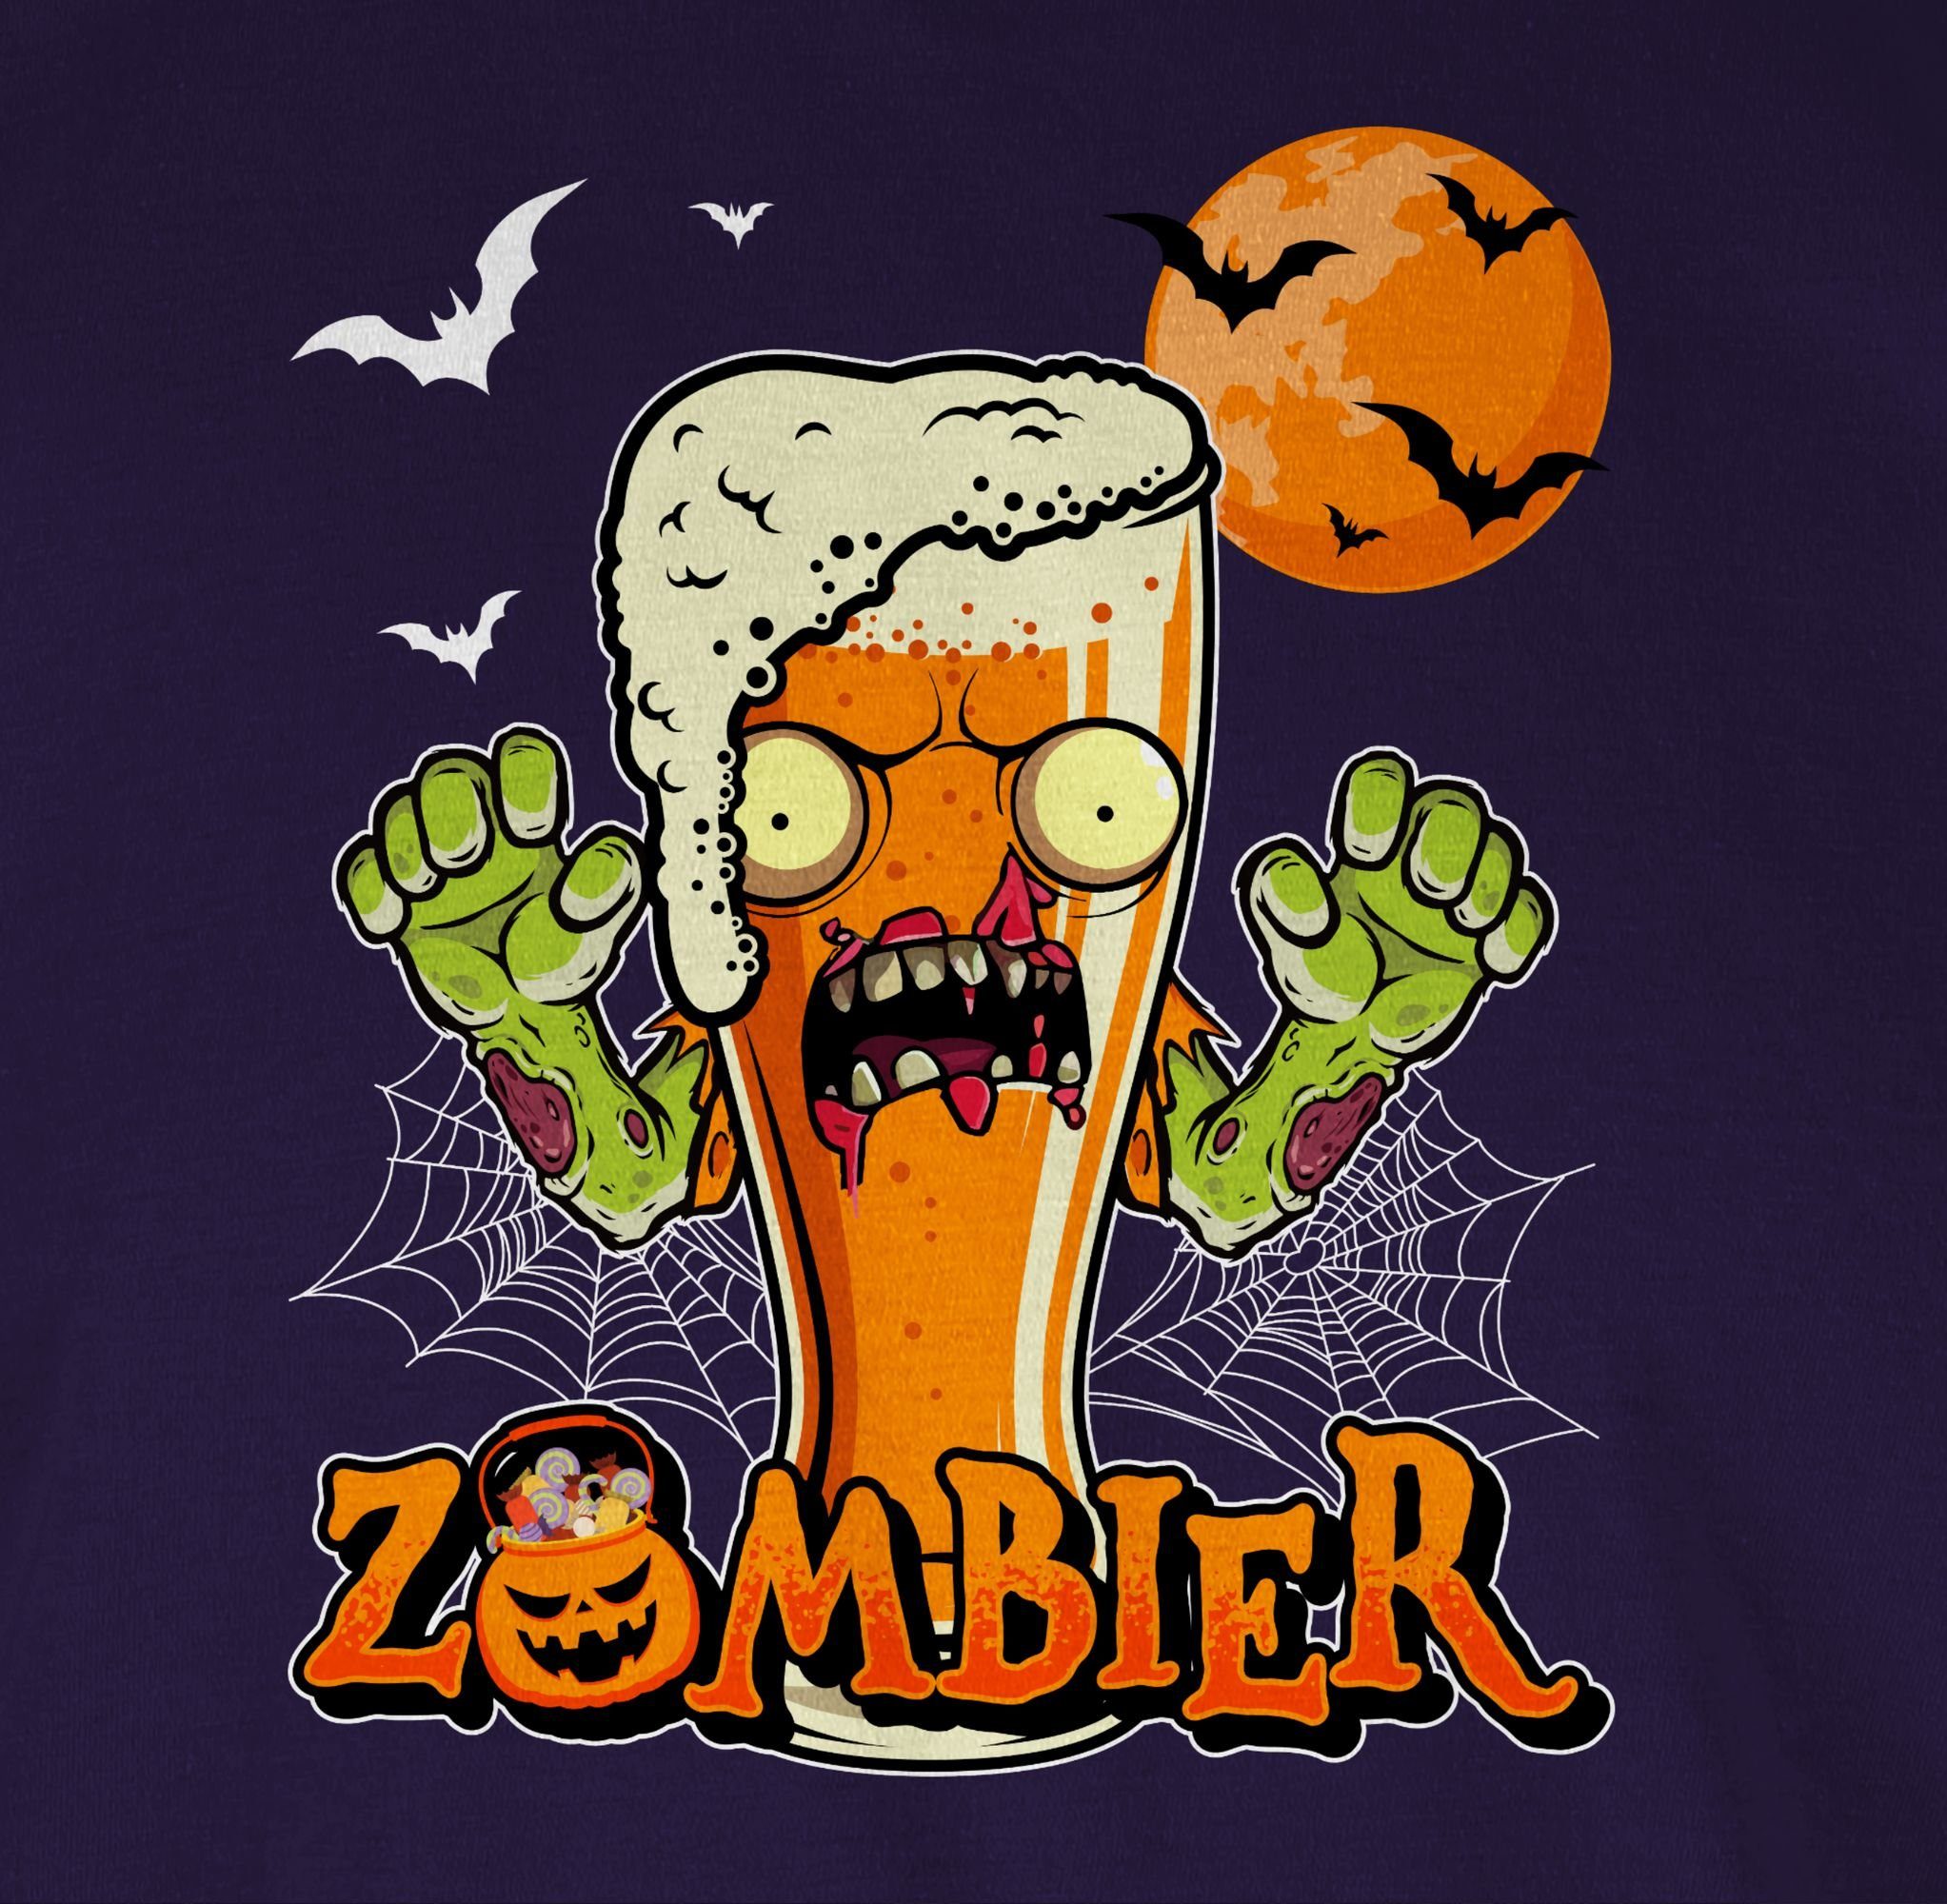 Lustige Lila Kostüme Bier Shirtracer Herren Geschenke Hopfen Zombie Halloween 02 Zombier Halloween T-Shirt